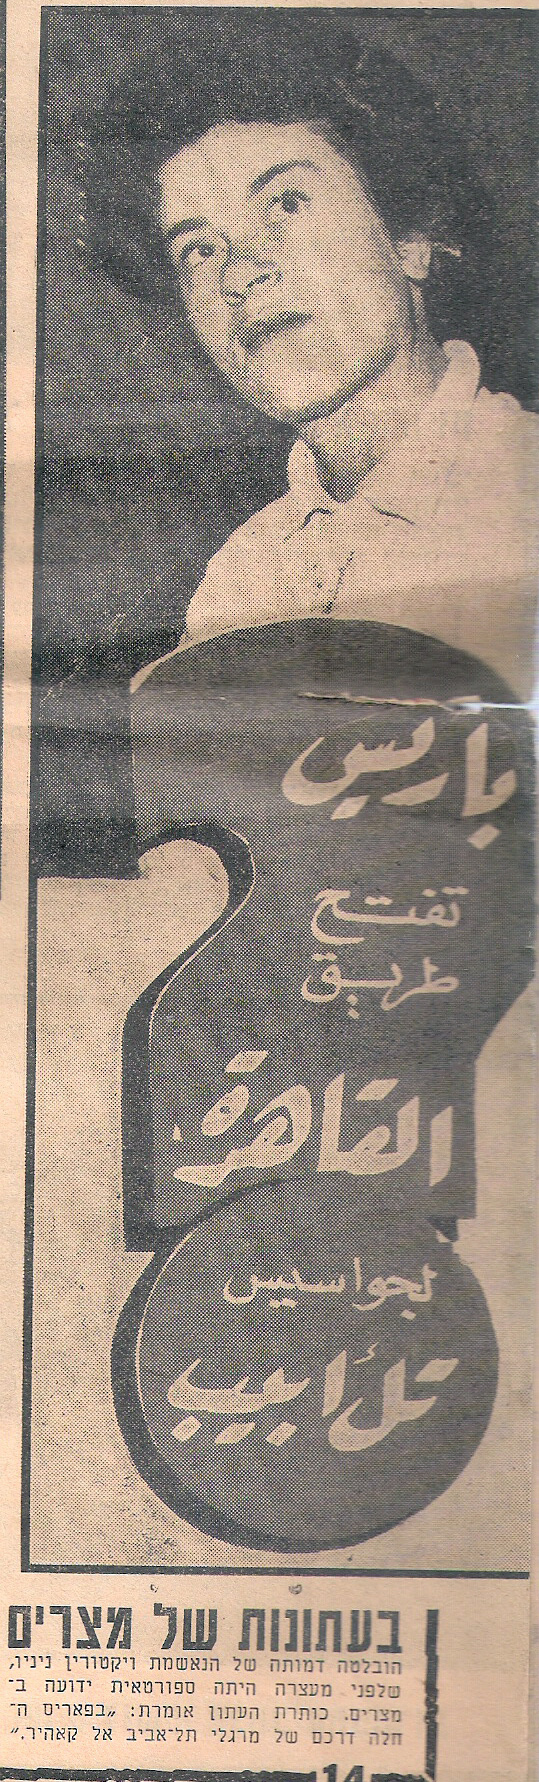 תמונת מרסל בעיתון מצרי